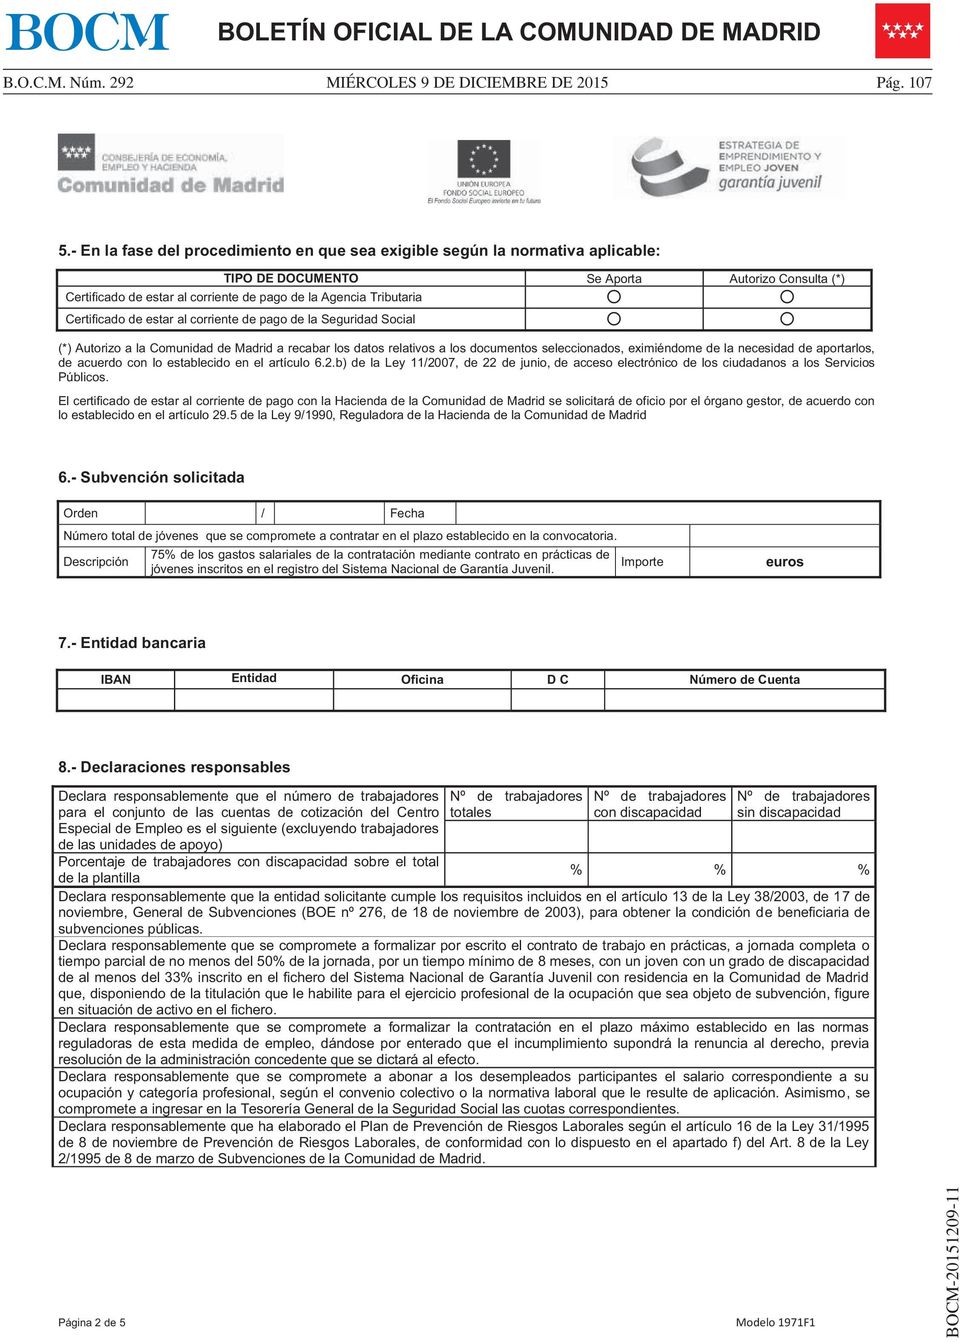 Certificado de estar al corriente de pago de la Seguridad Social (*) Autorizo a la Comunidad de Madrid a recabar los datos relativos a los documentos seleccionados, eximiéndome de la necesidad de